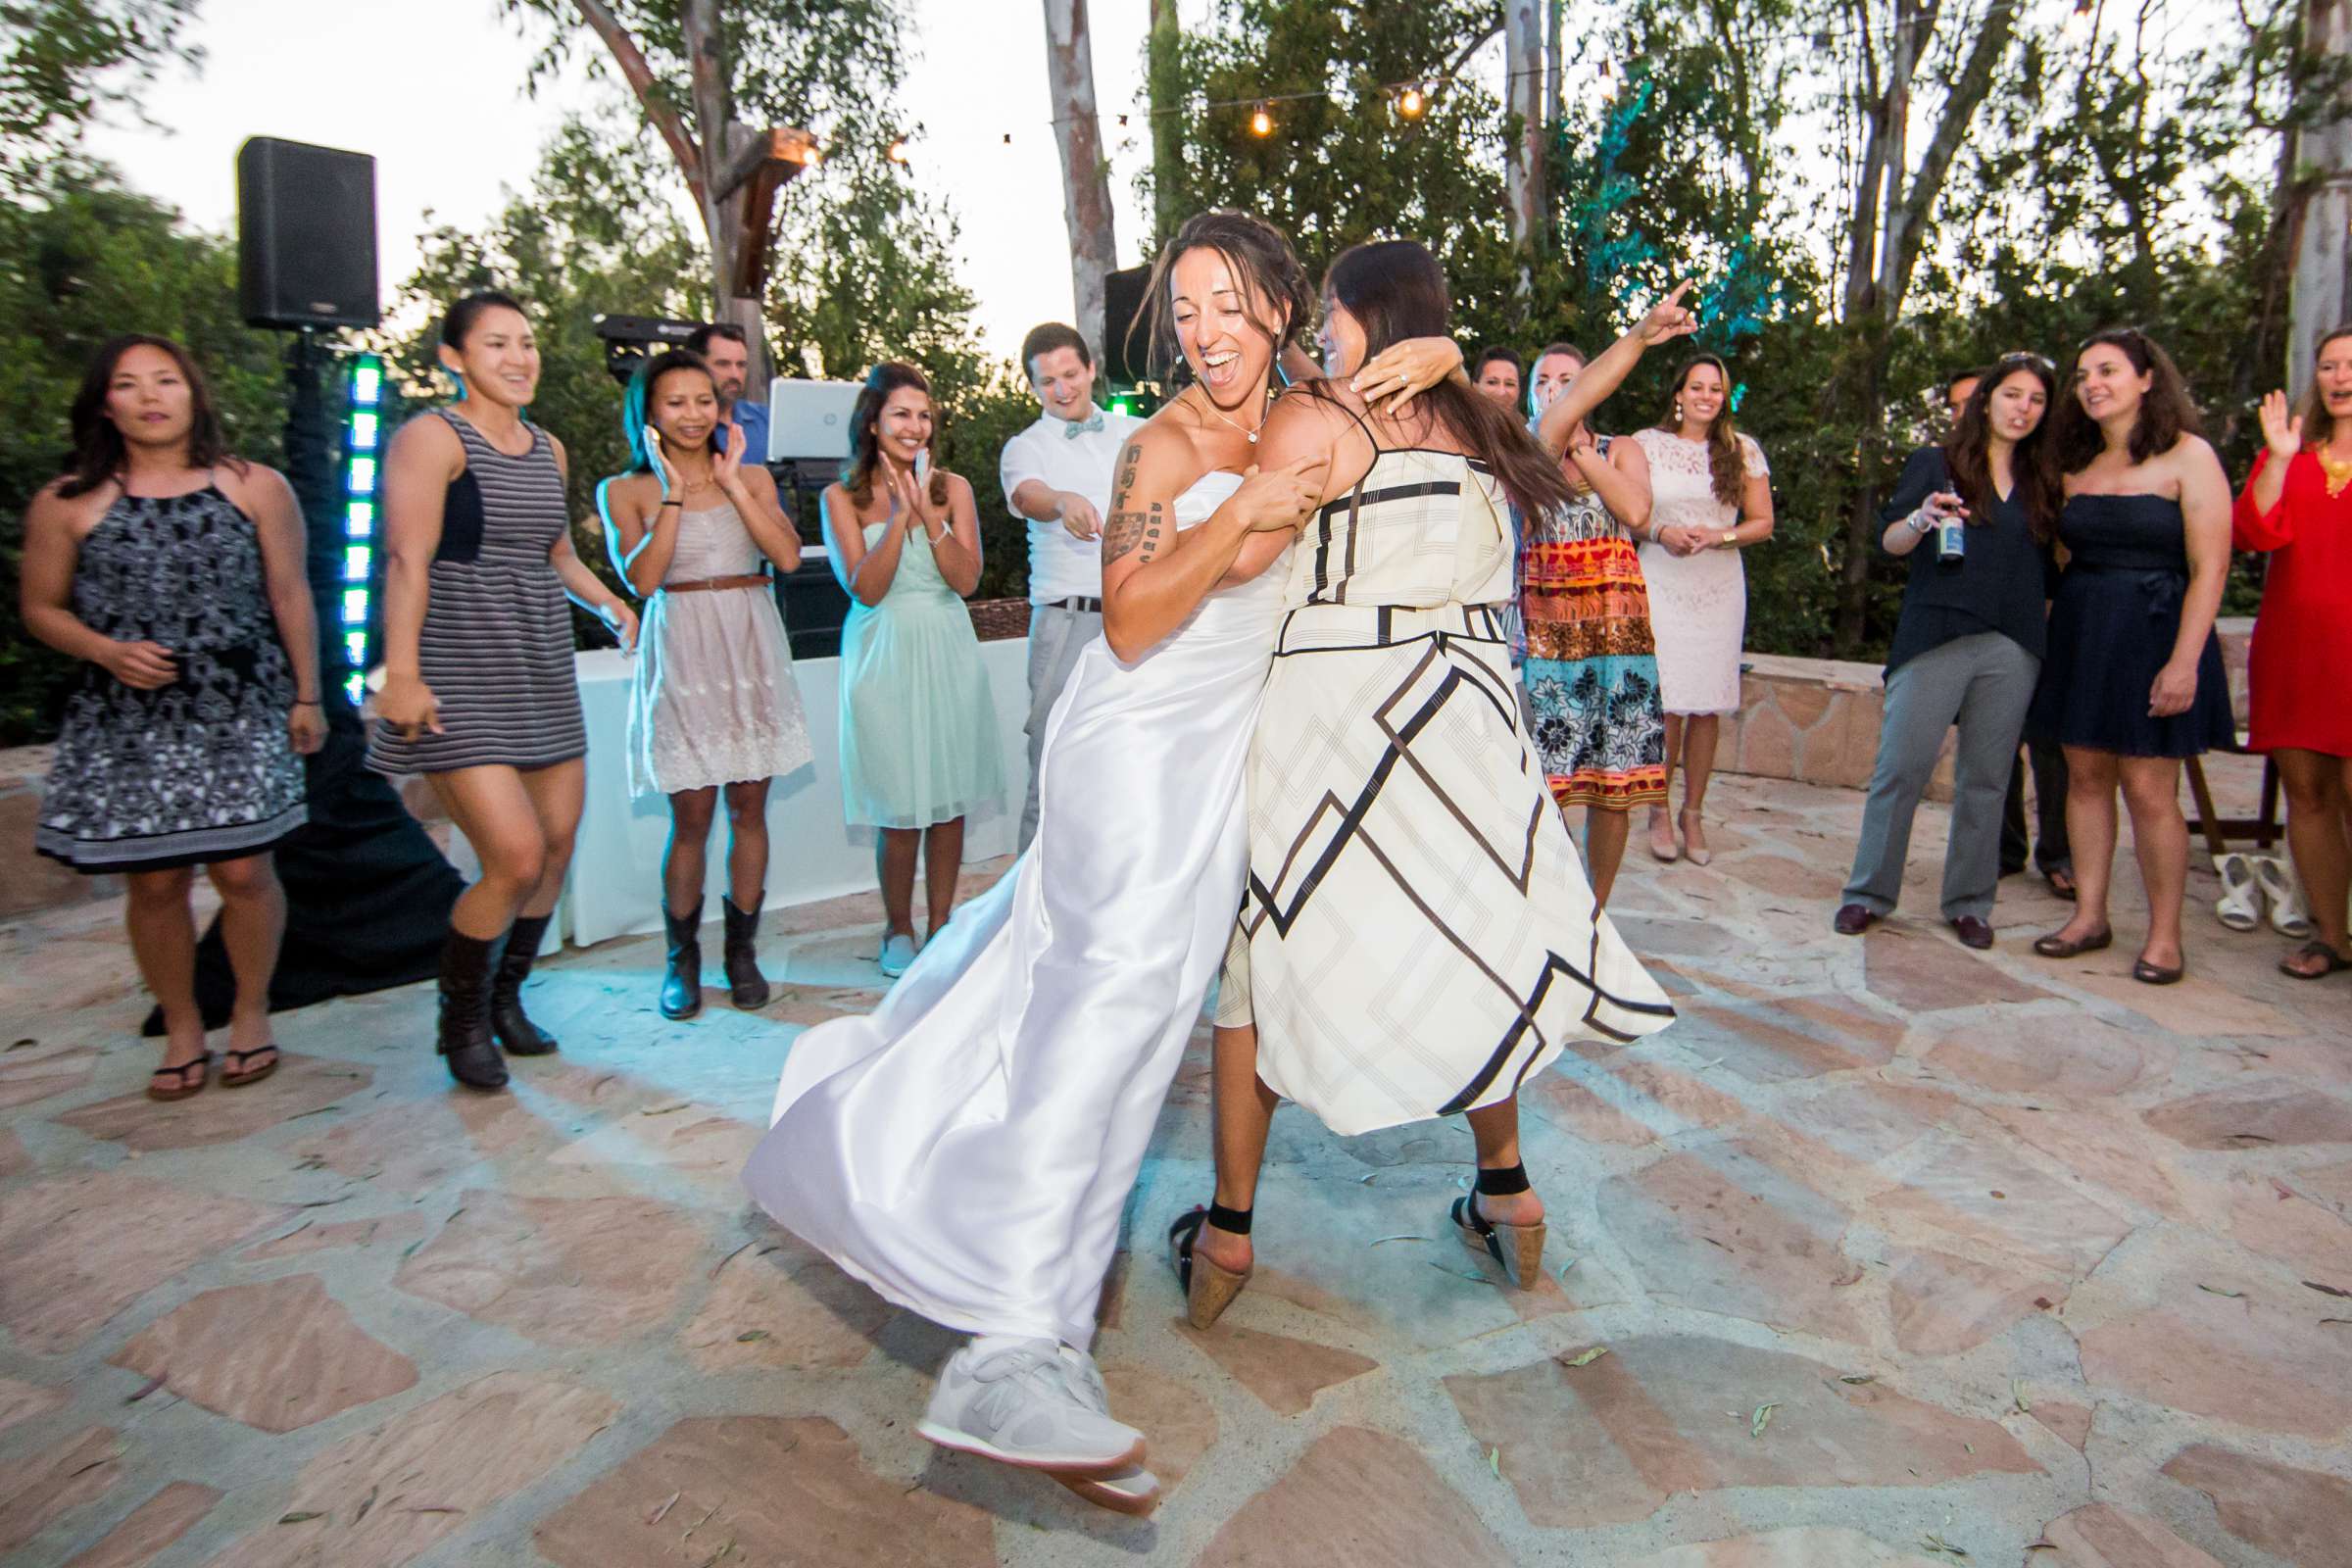 Leo Carrillo Ranch Wedding, Nina (Angenina) and Ligia Wedding Photo #248699 by True Photography